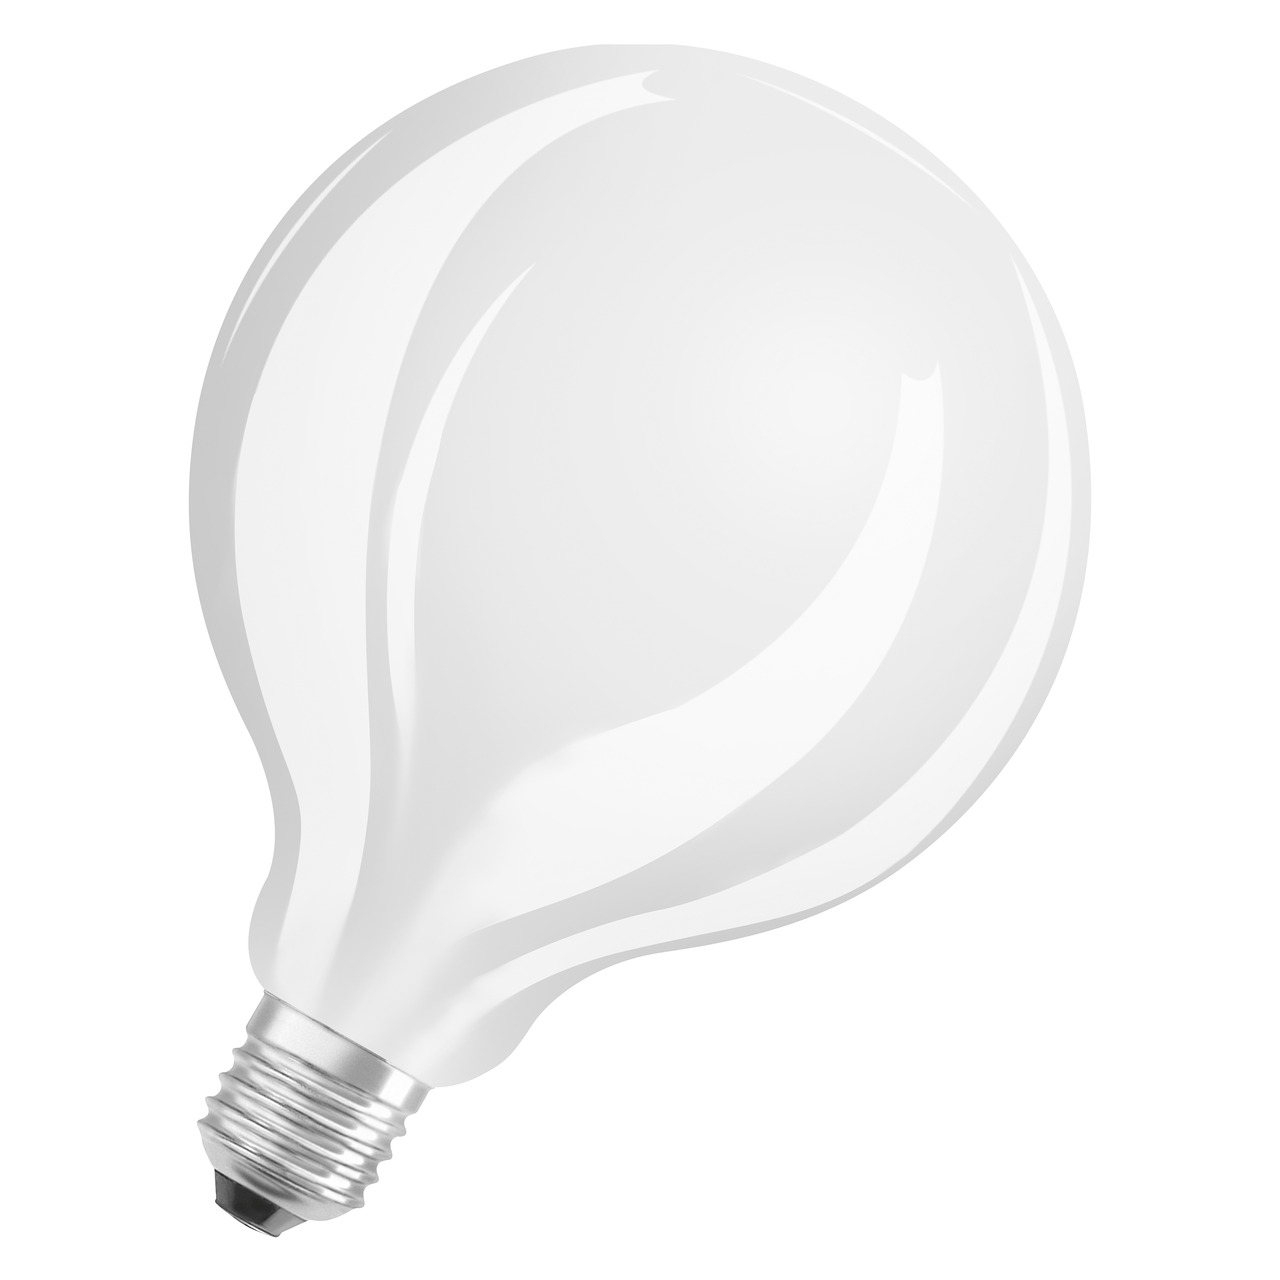 OSRAM 11-W-LED-Lampe G125- E27- 1521 lm- warmweiss- matt unter Beleuchtung